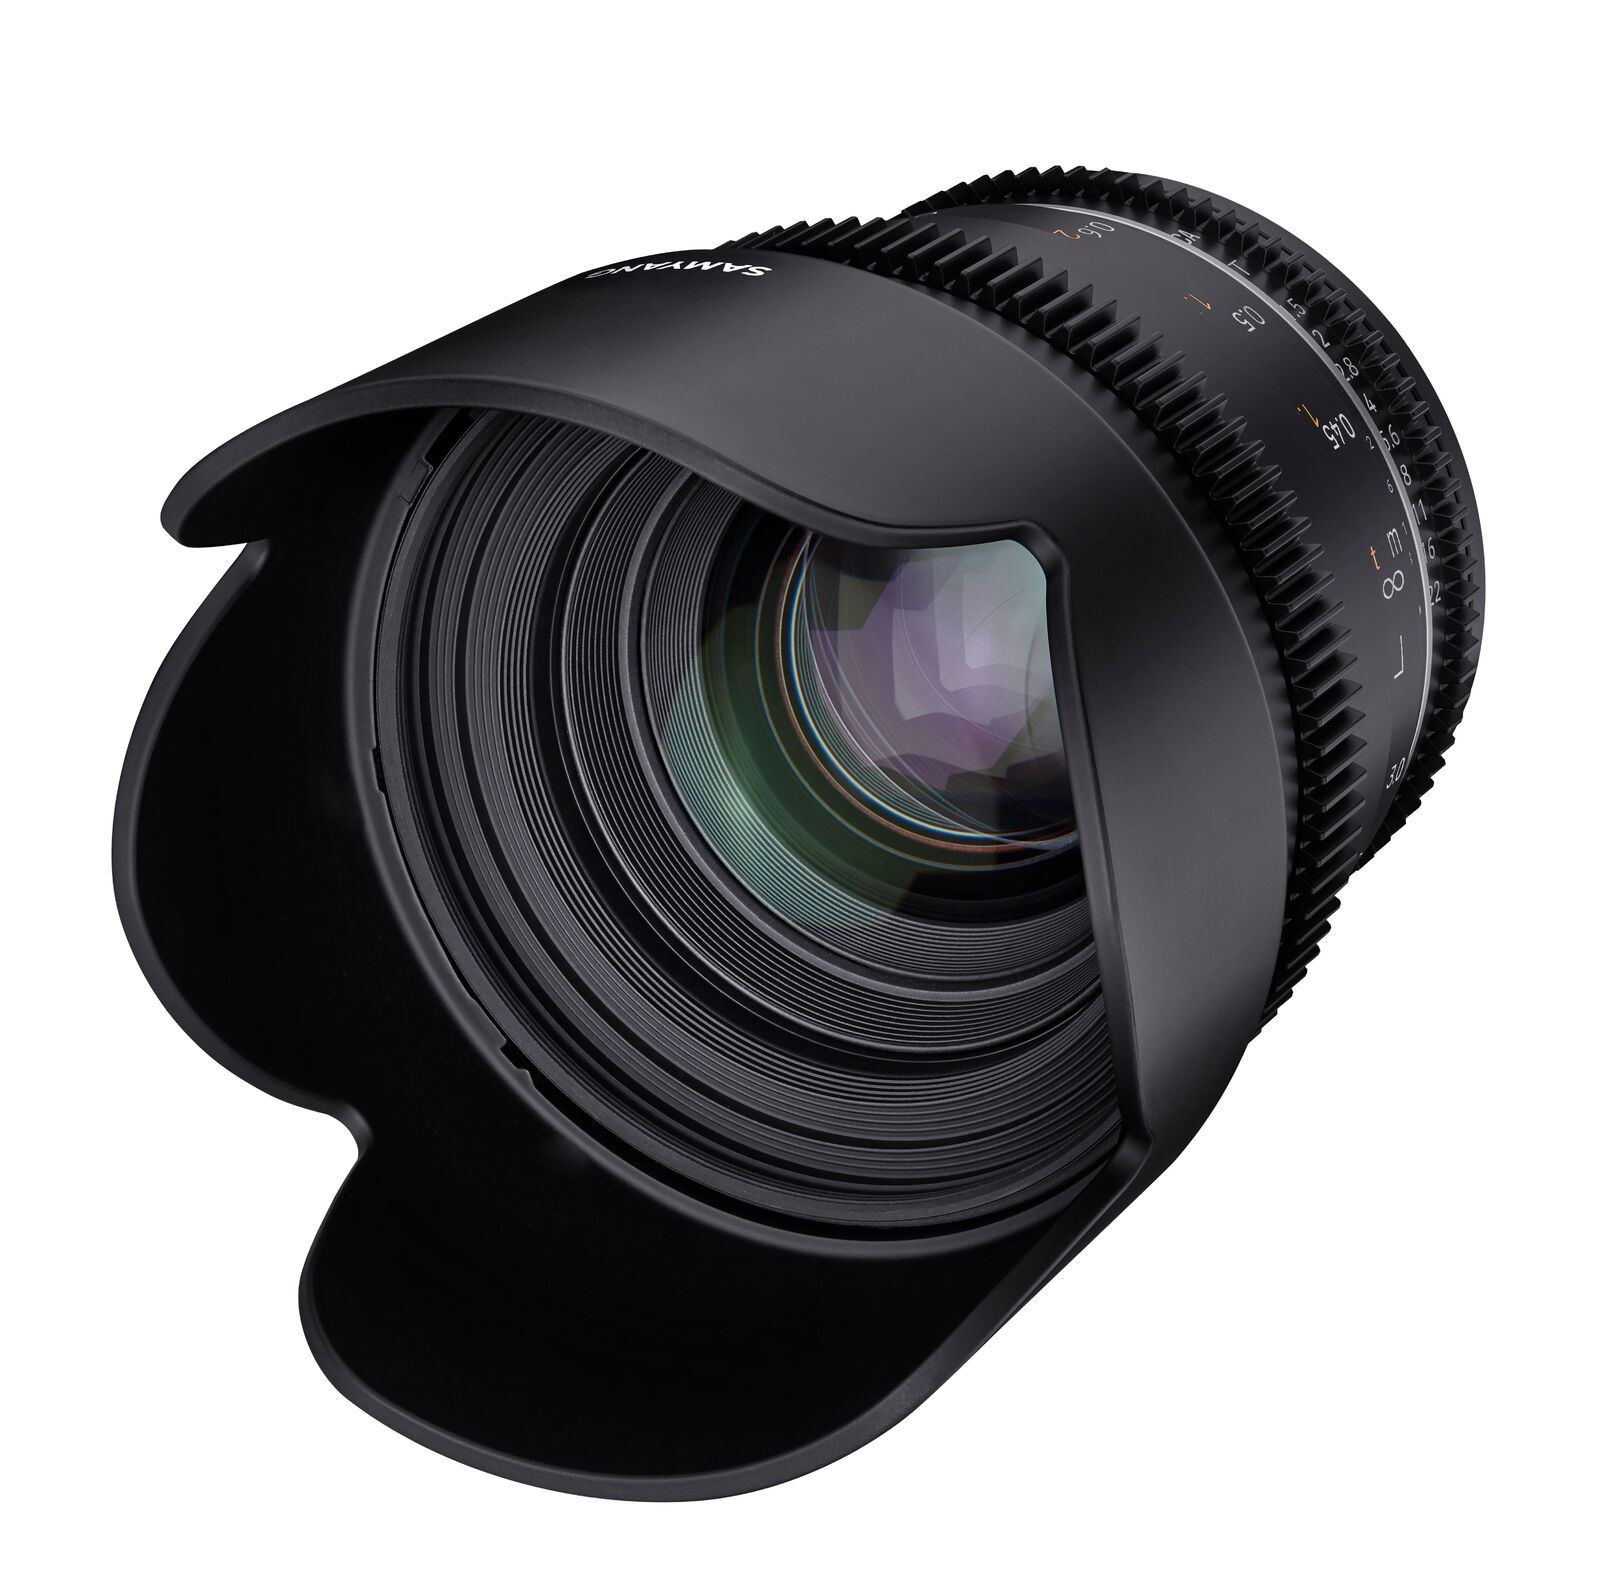 Samyang 50mm T1.5 MK2 Nikon Full Frame VDSLR/Cine Lens